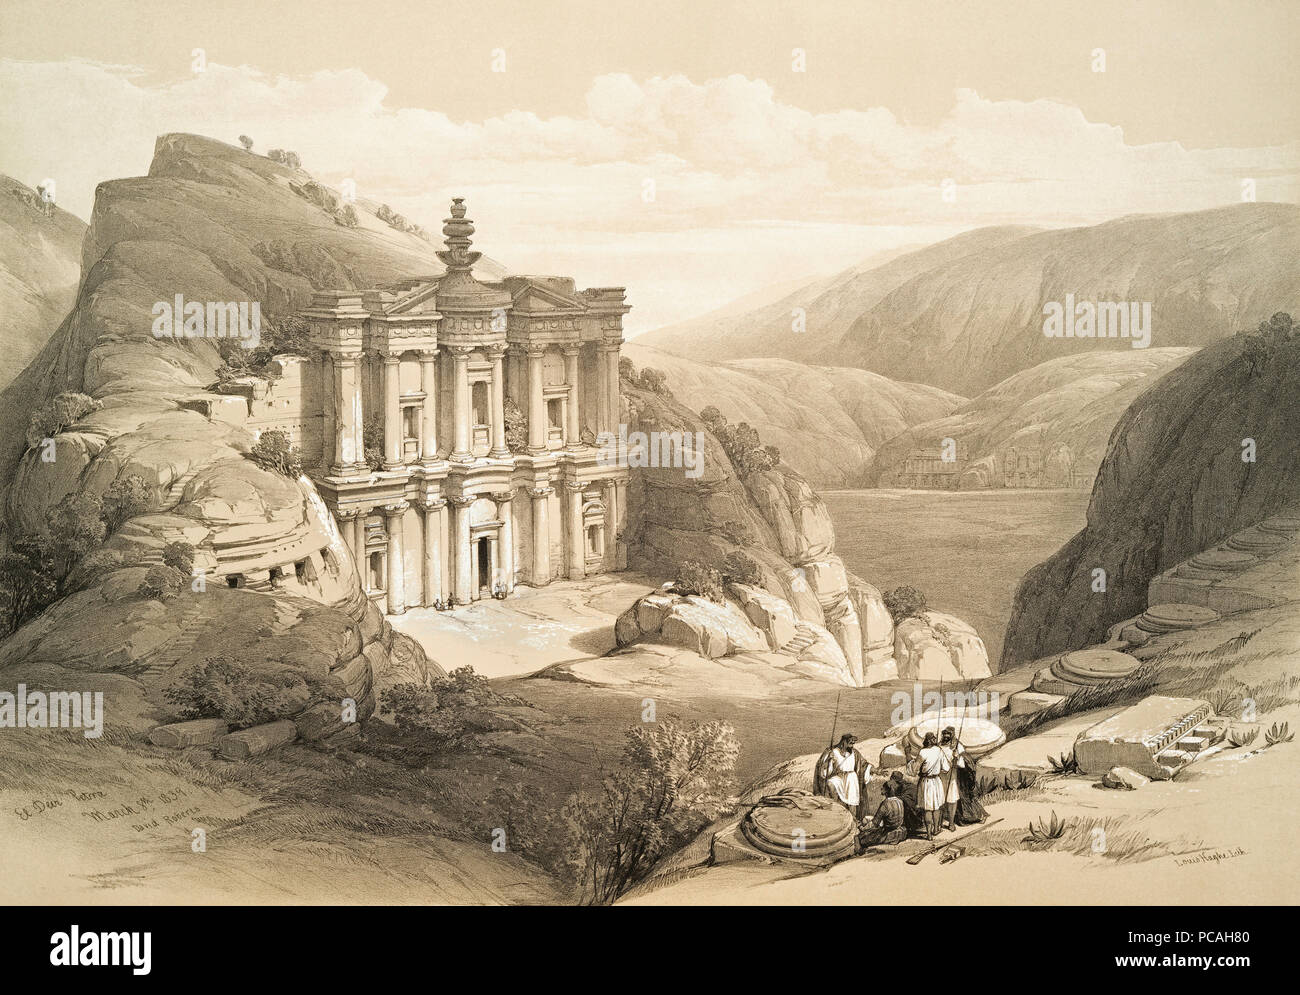 El Deir. Nach einer Arbeit von schottischen Künstlers David Roberts, 1796-1864 und belgischen Lithograph Louis Haghe, 1806-1885. Stockfoto